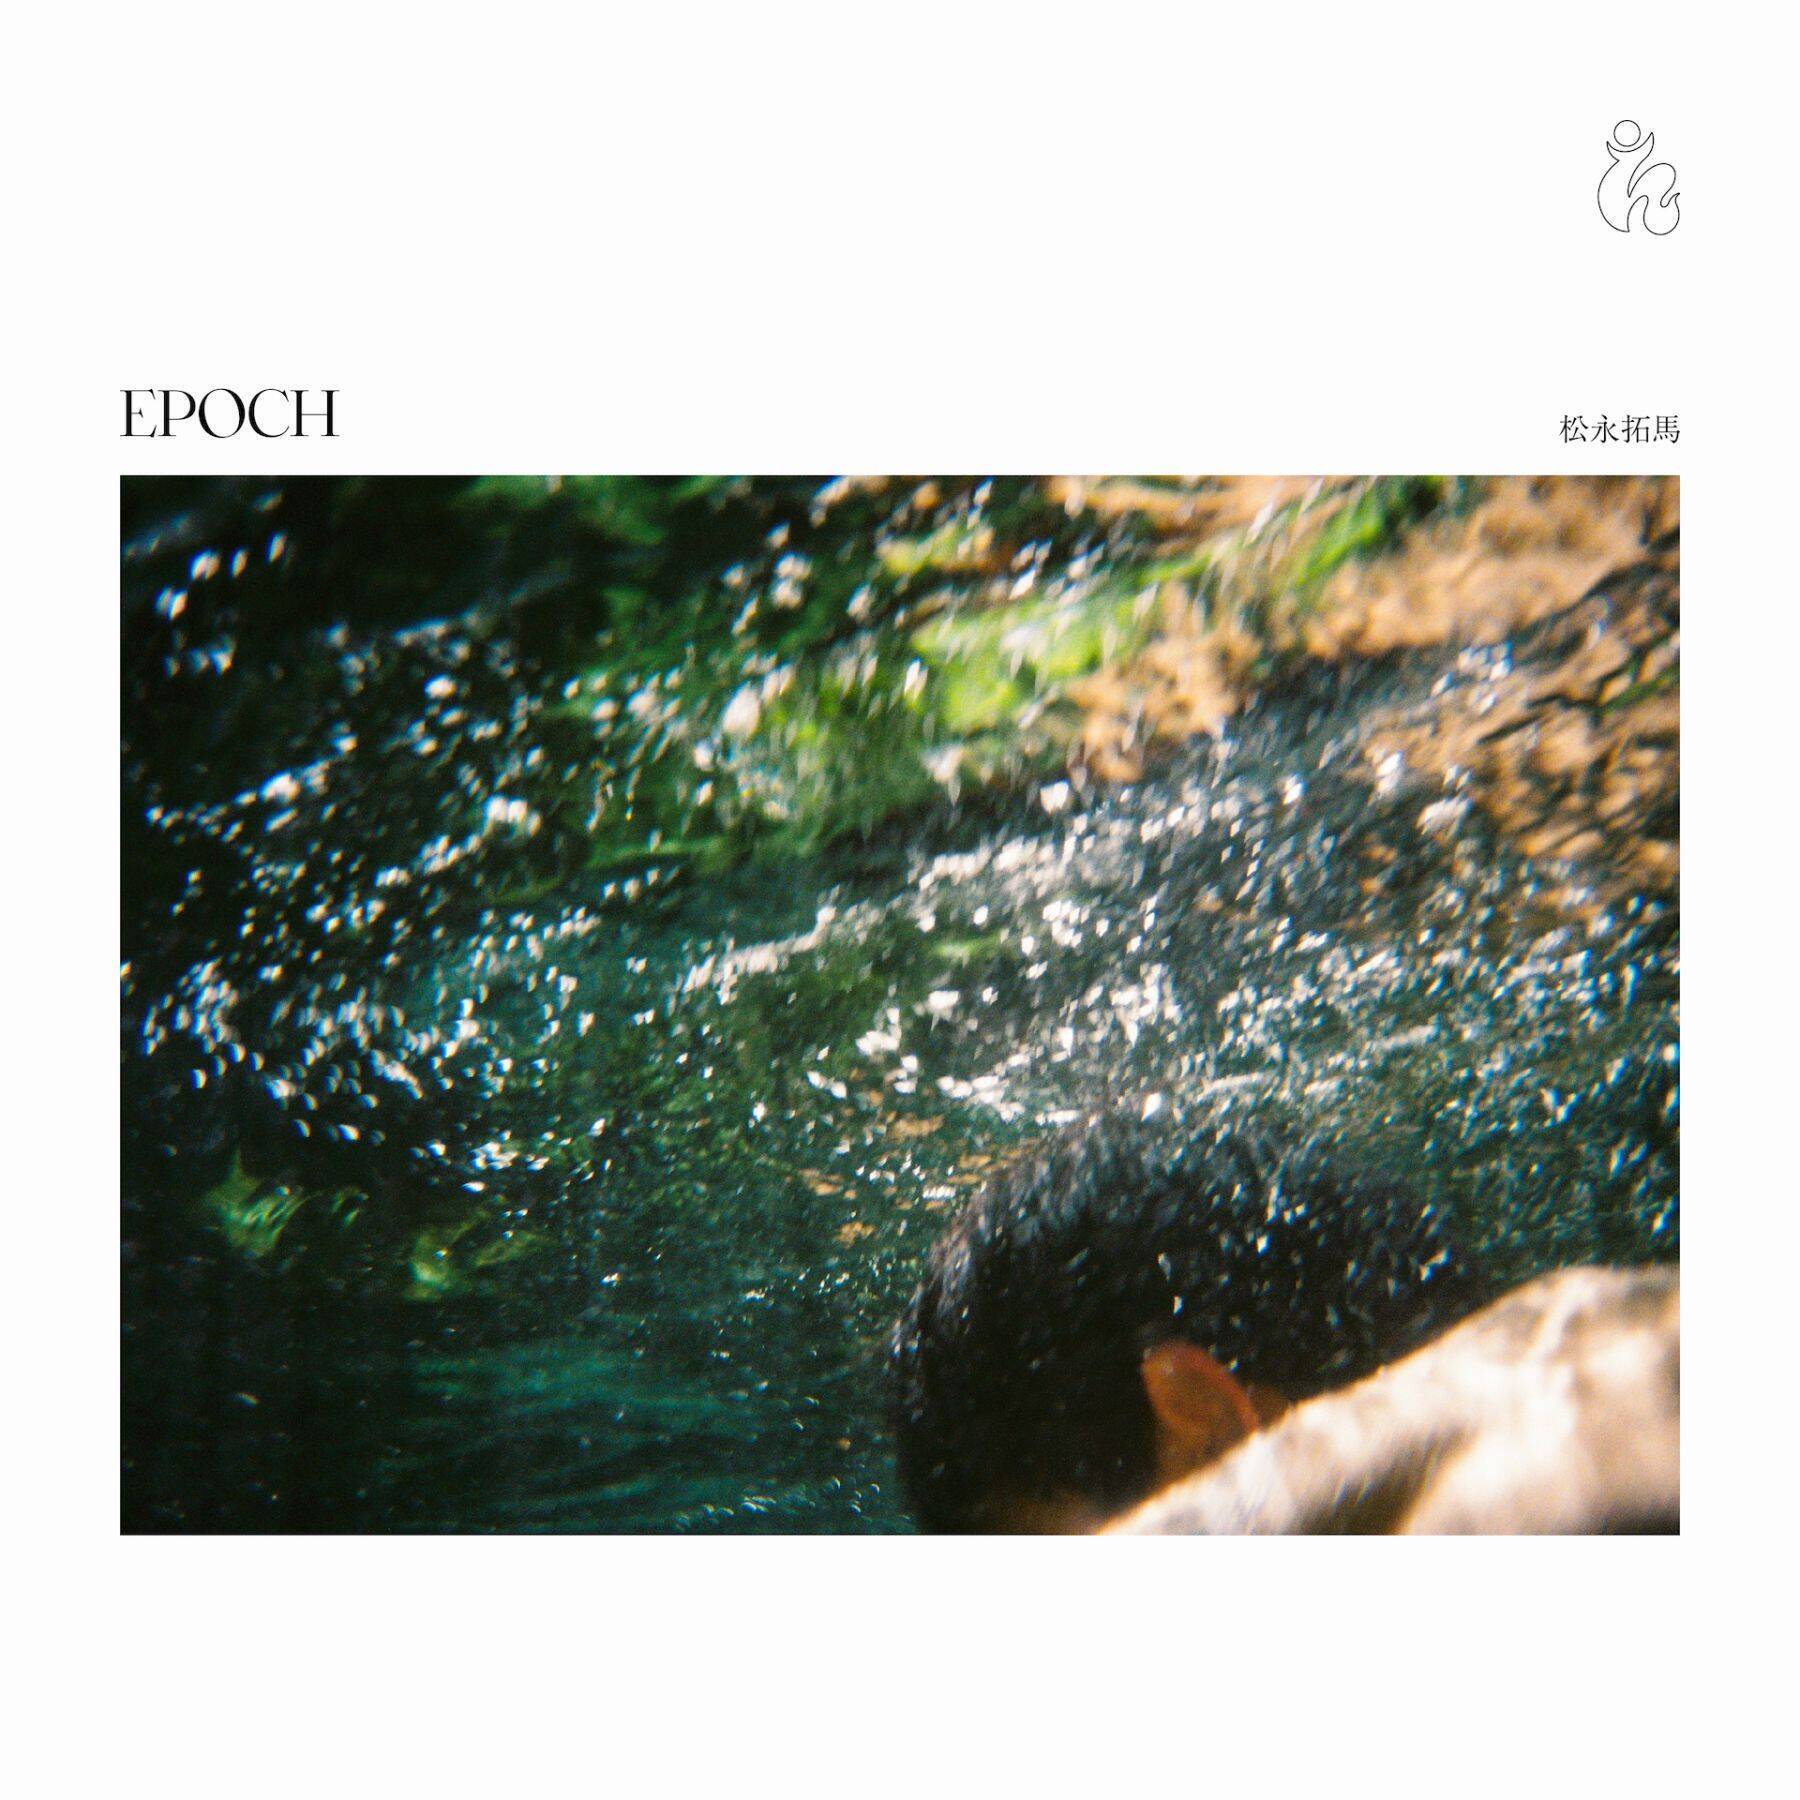 『Epoch』は暮らしの音楽──松永拓馬と篠田ミルが共有する、またとない時代のフィーリング